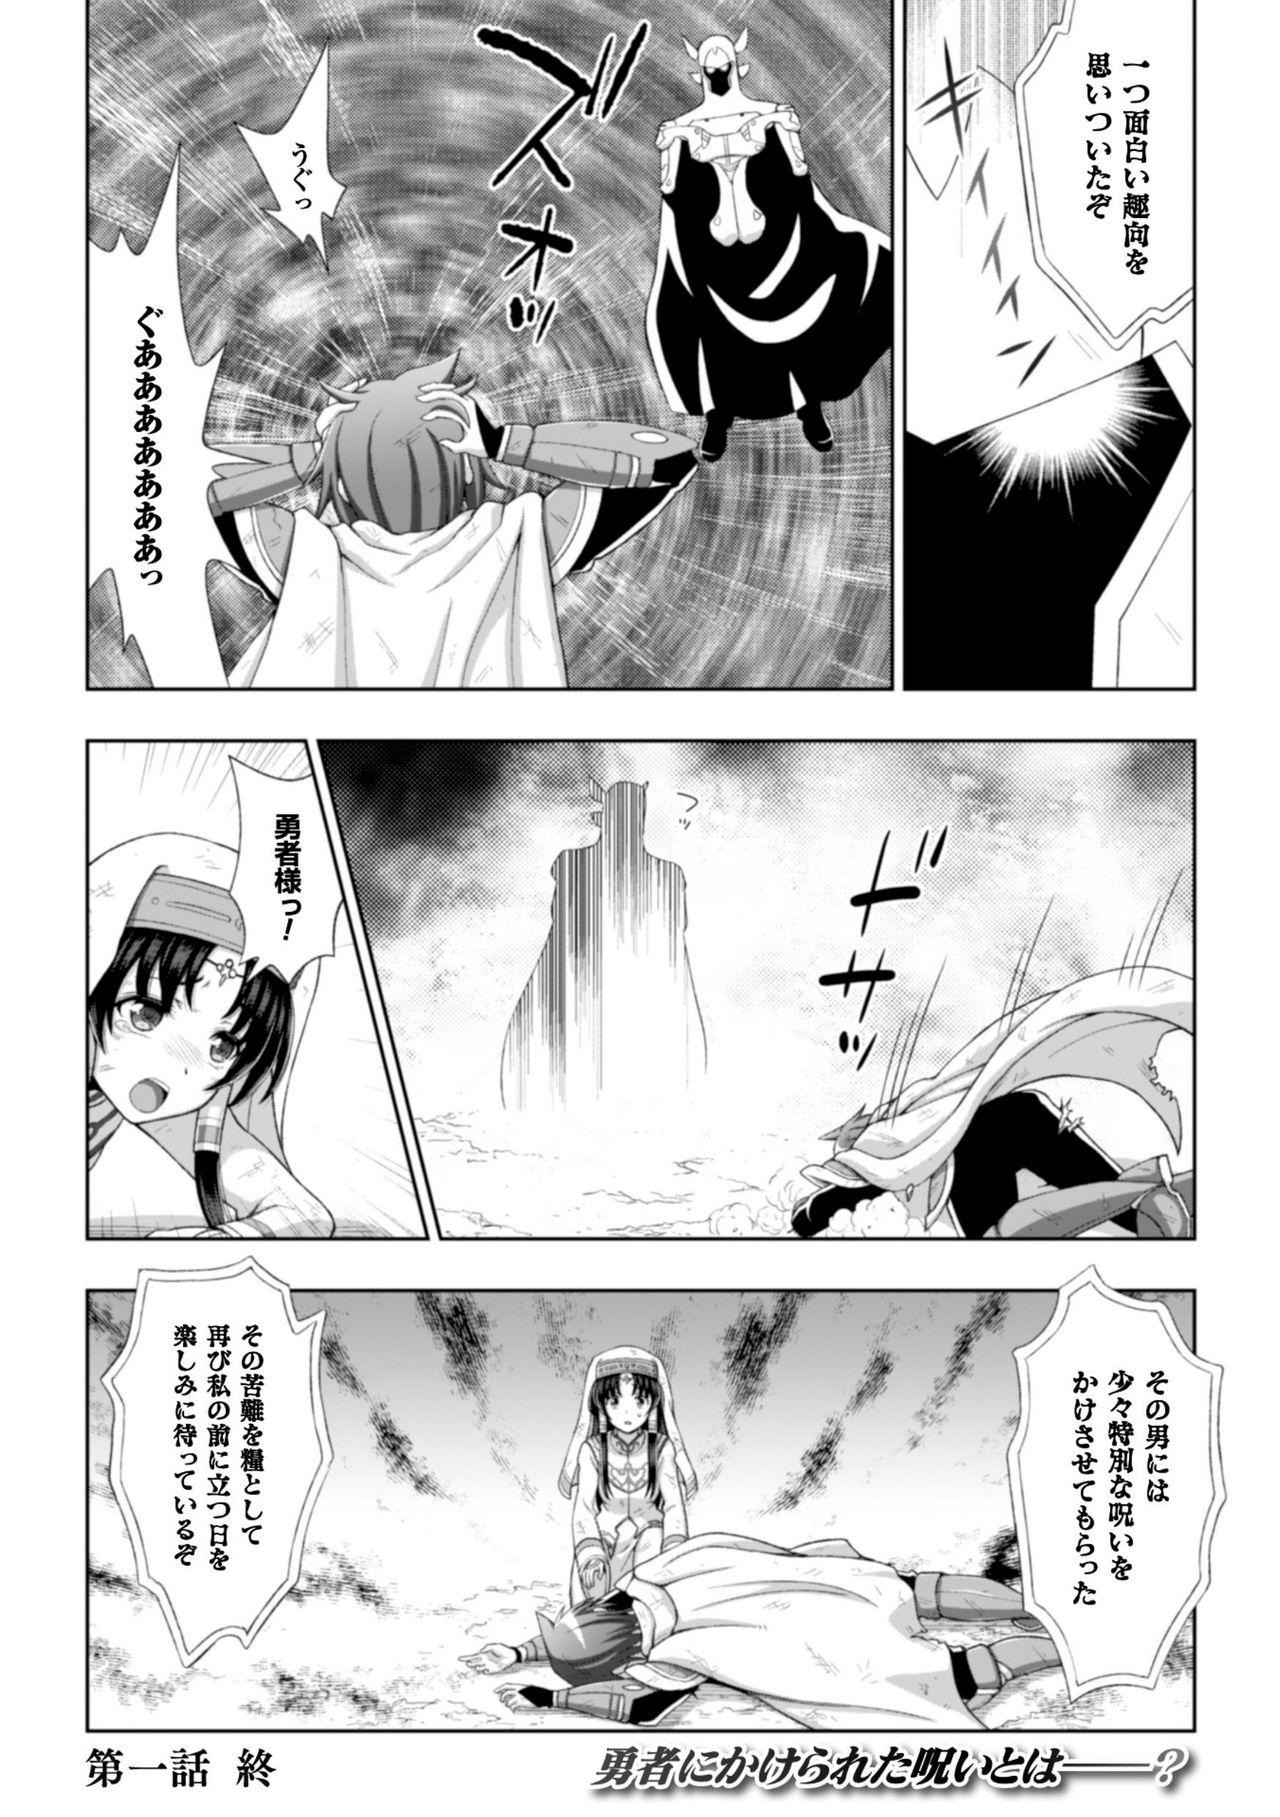 Seigi no Heroine Kangoku File Vol. 8 26